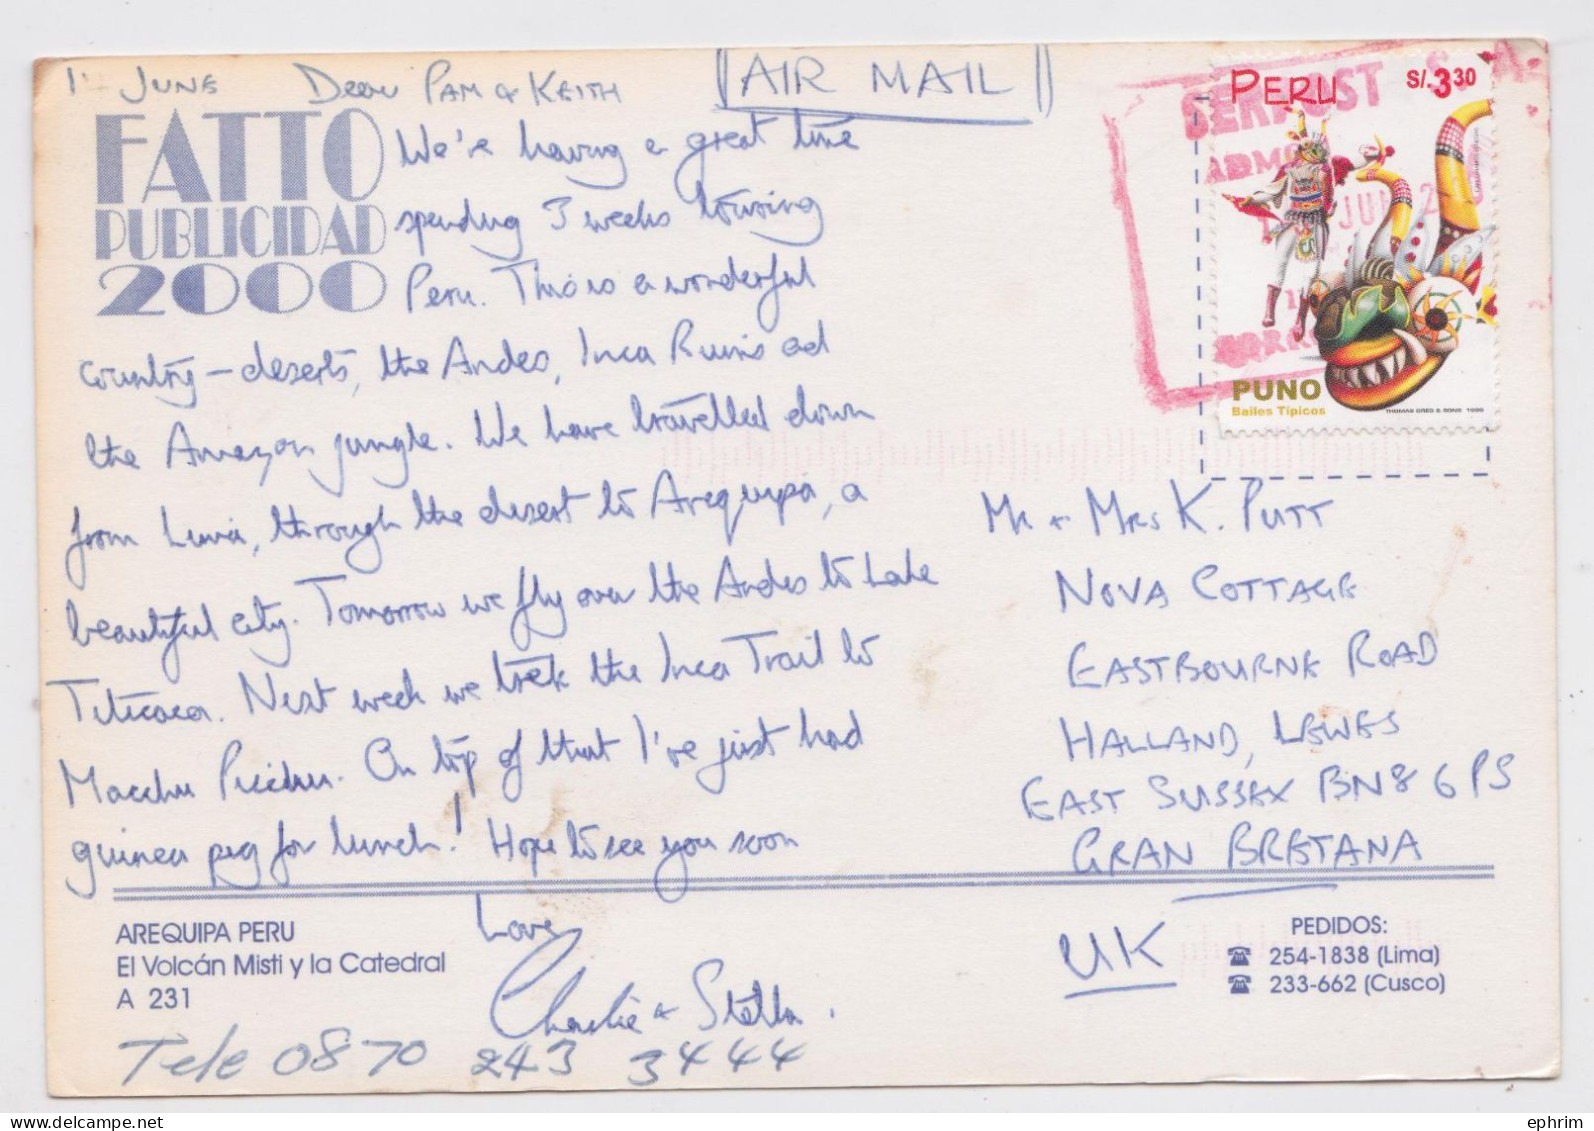 Pérou Peru Carte Postale Timbre Sello Bailes Tipicos Stamp Air Mail Postcard 2000 - Peru